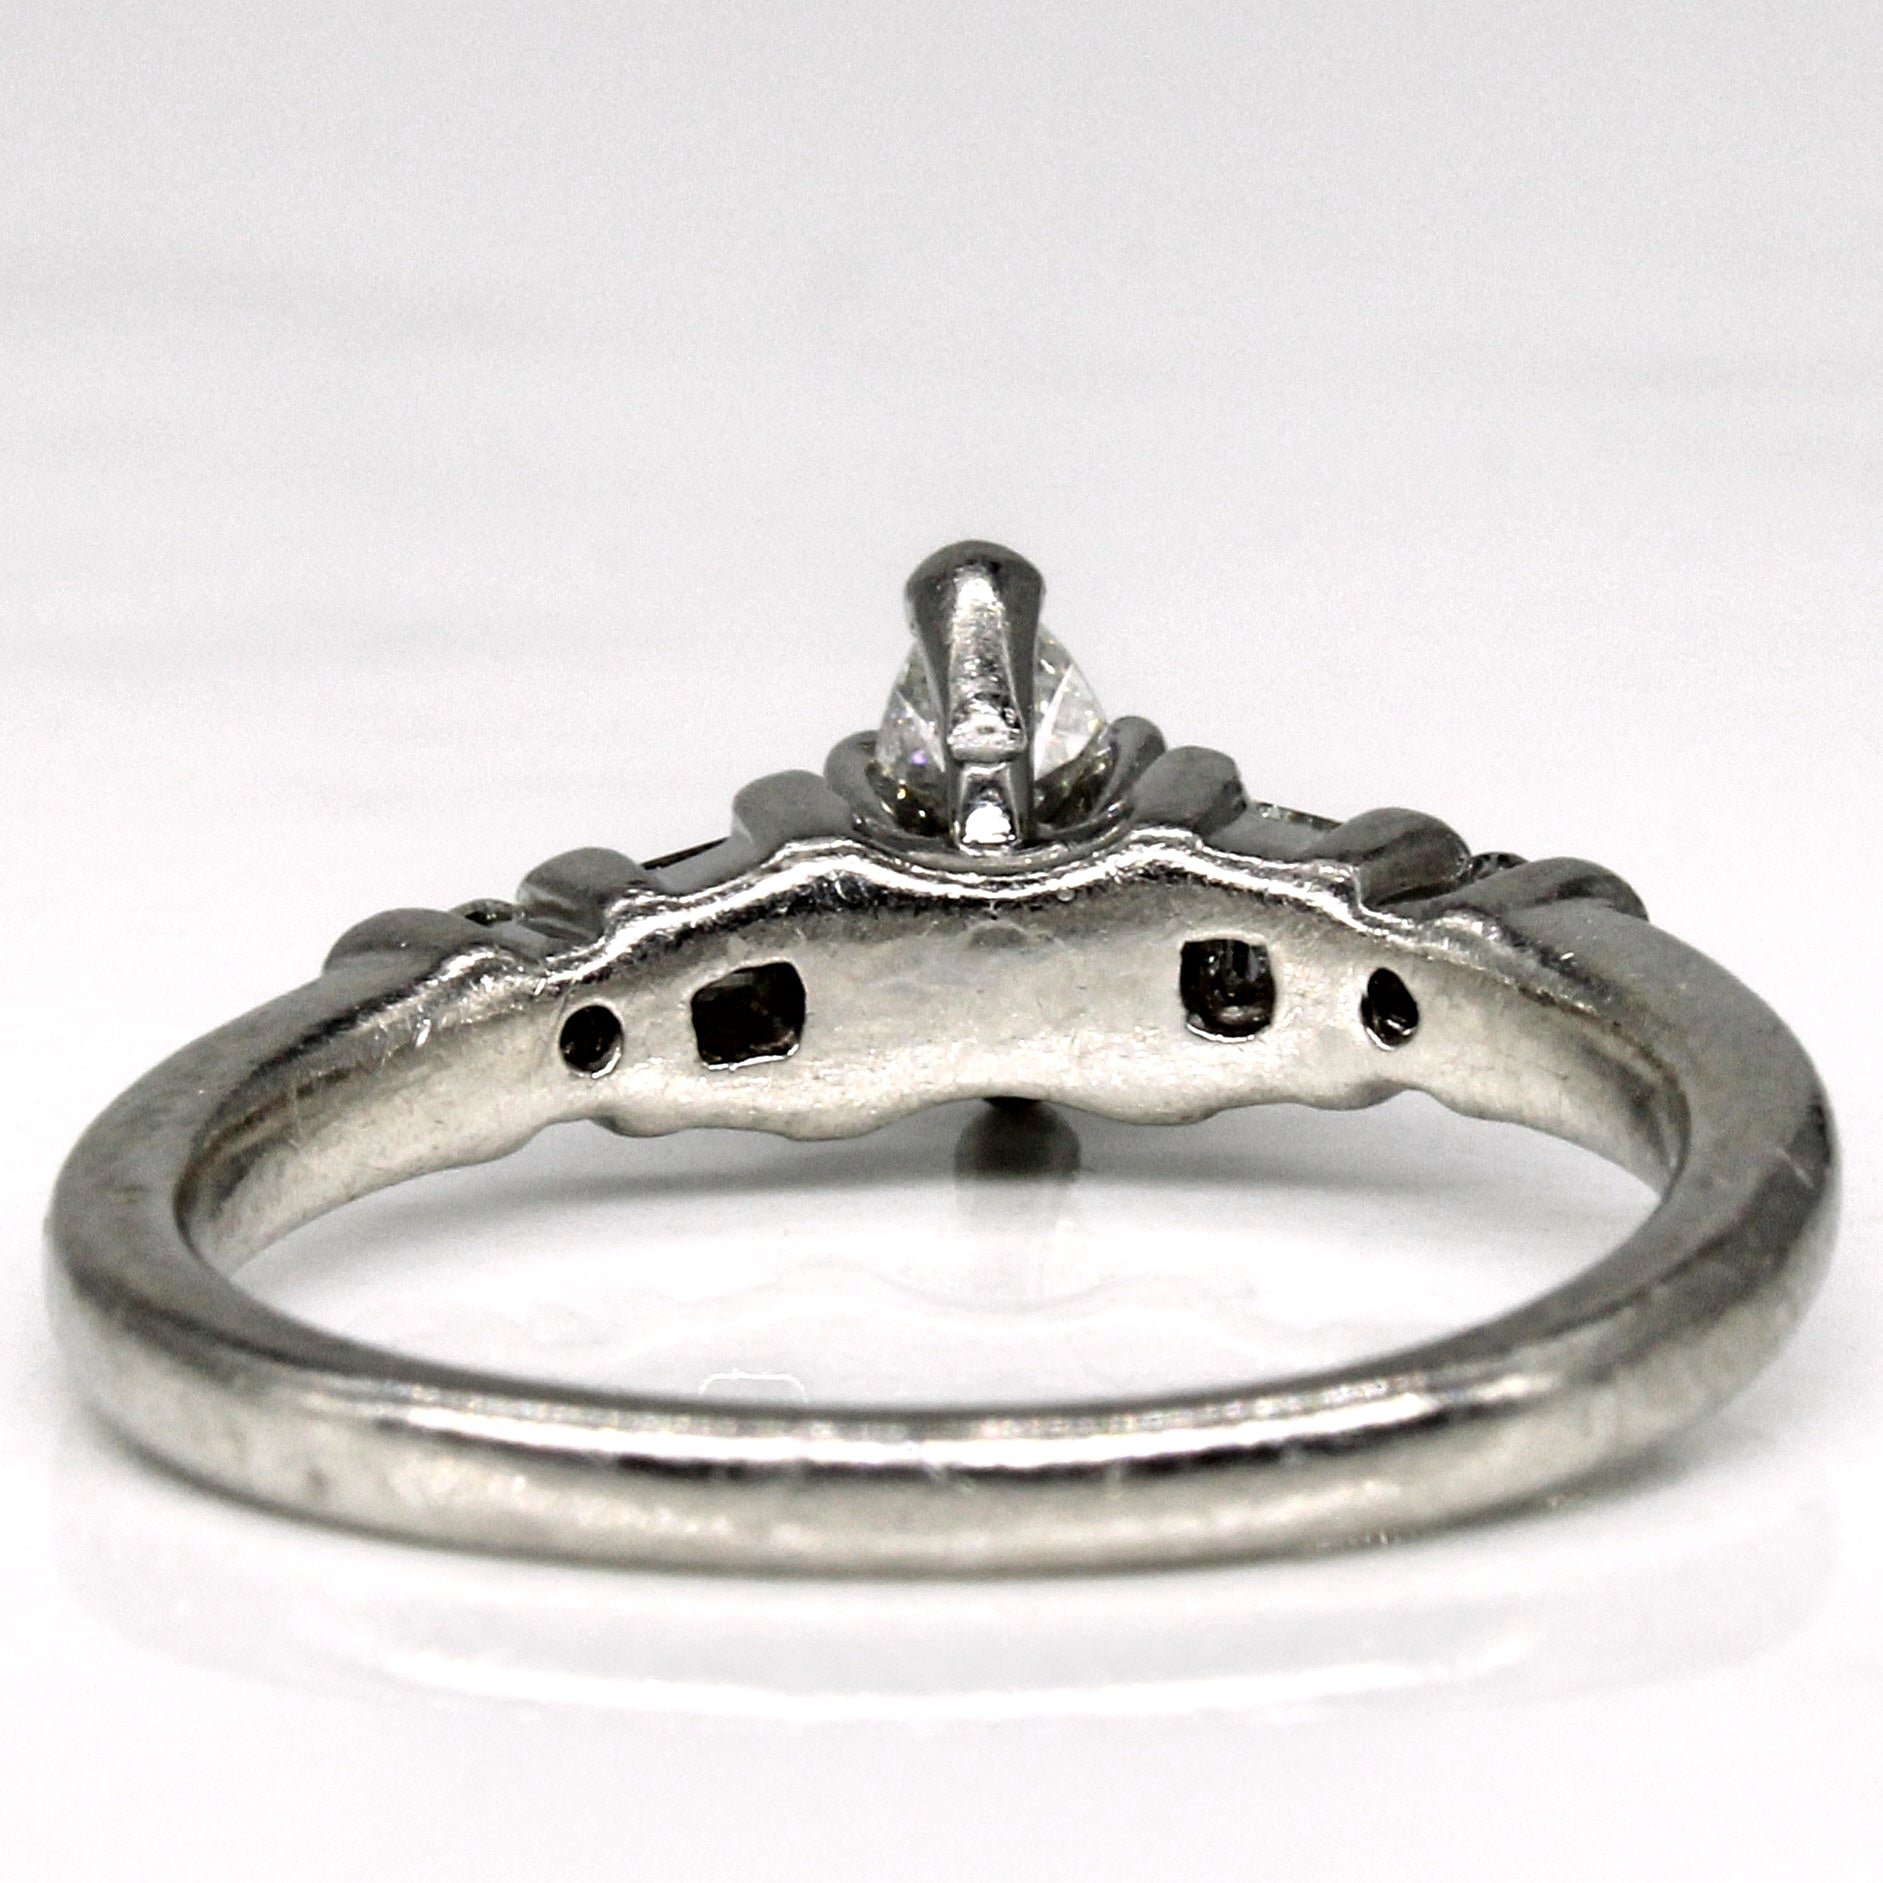 Platinum Marquise Diamond Engagement Ring | 0.44ctw | SZ 6.75 |